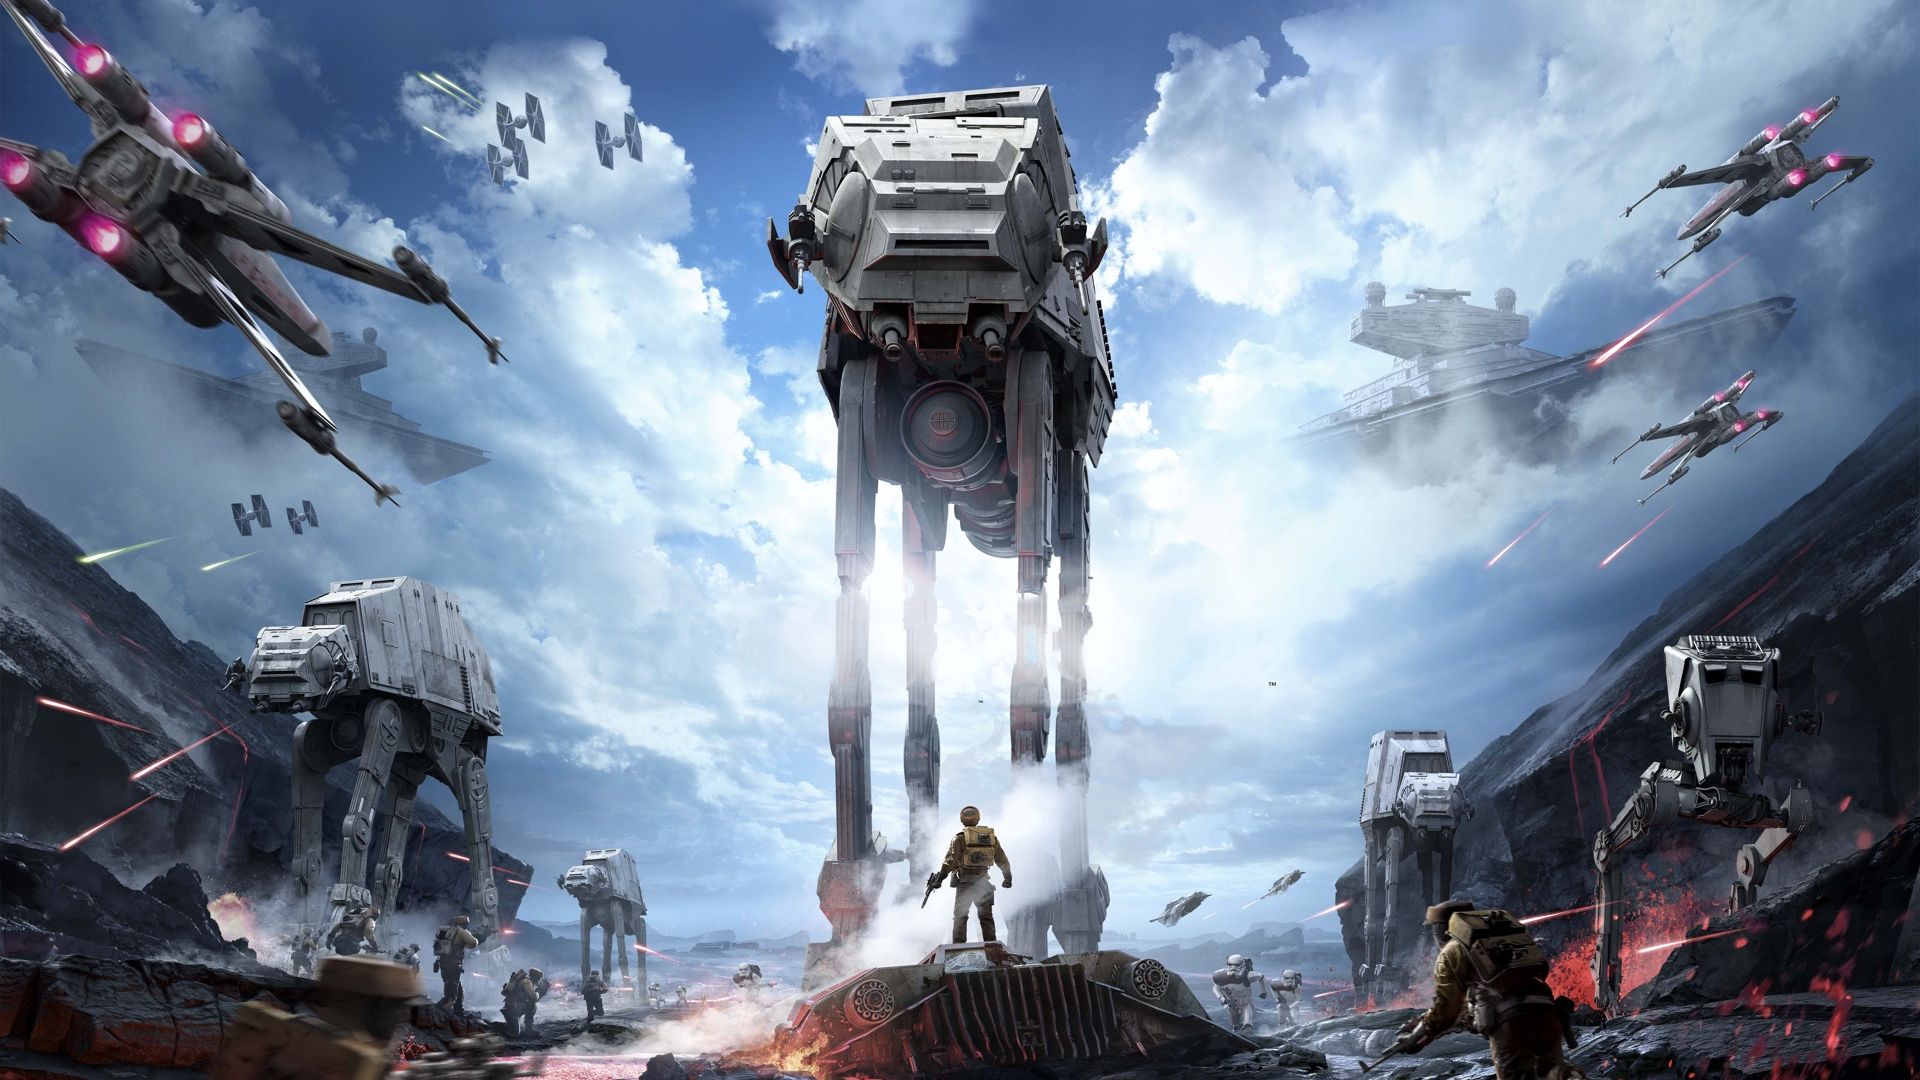 Star Wars Battlefront Producer Defends Game To Skeptics Reveals More